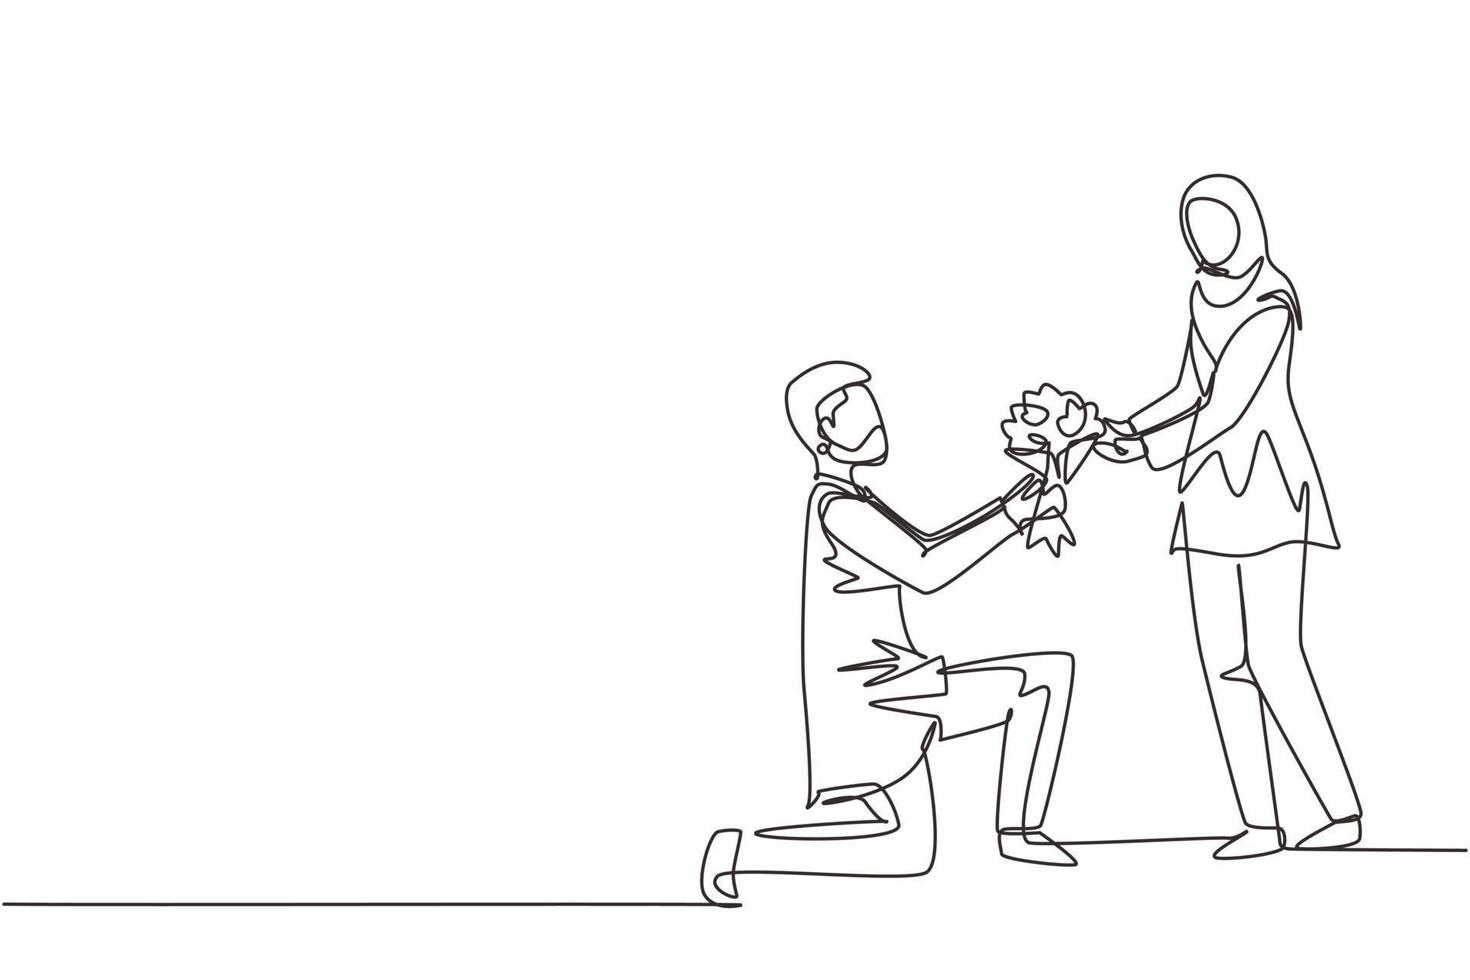 una sola línea continua dibujando a un hombre árabe de rodillas haciendo una propuesta de matrimonio a una mujer con ramo. chico enamorado dando flores. pareja feliz preparándose para la boda. vector de diseño gráfico de dibujo de una línea